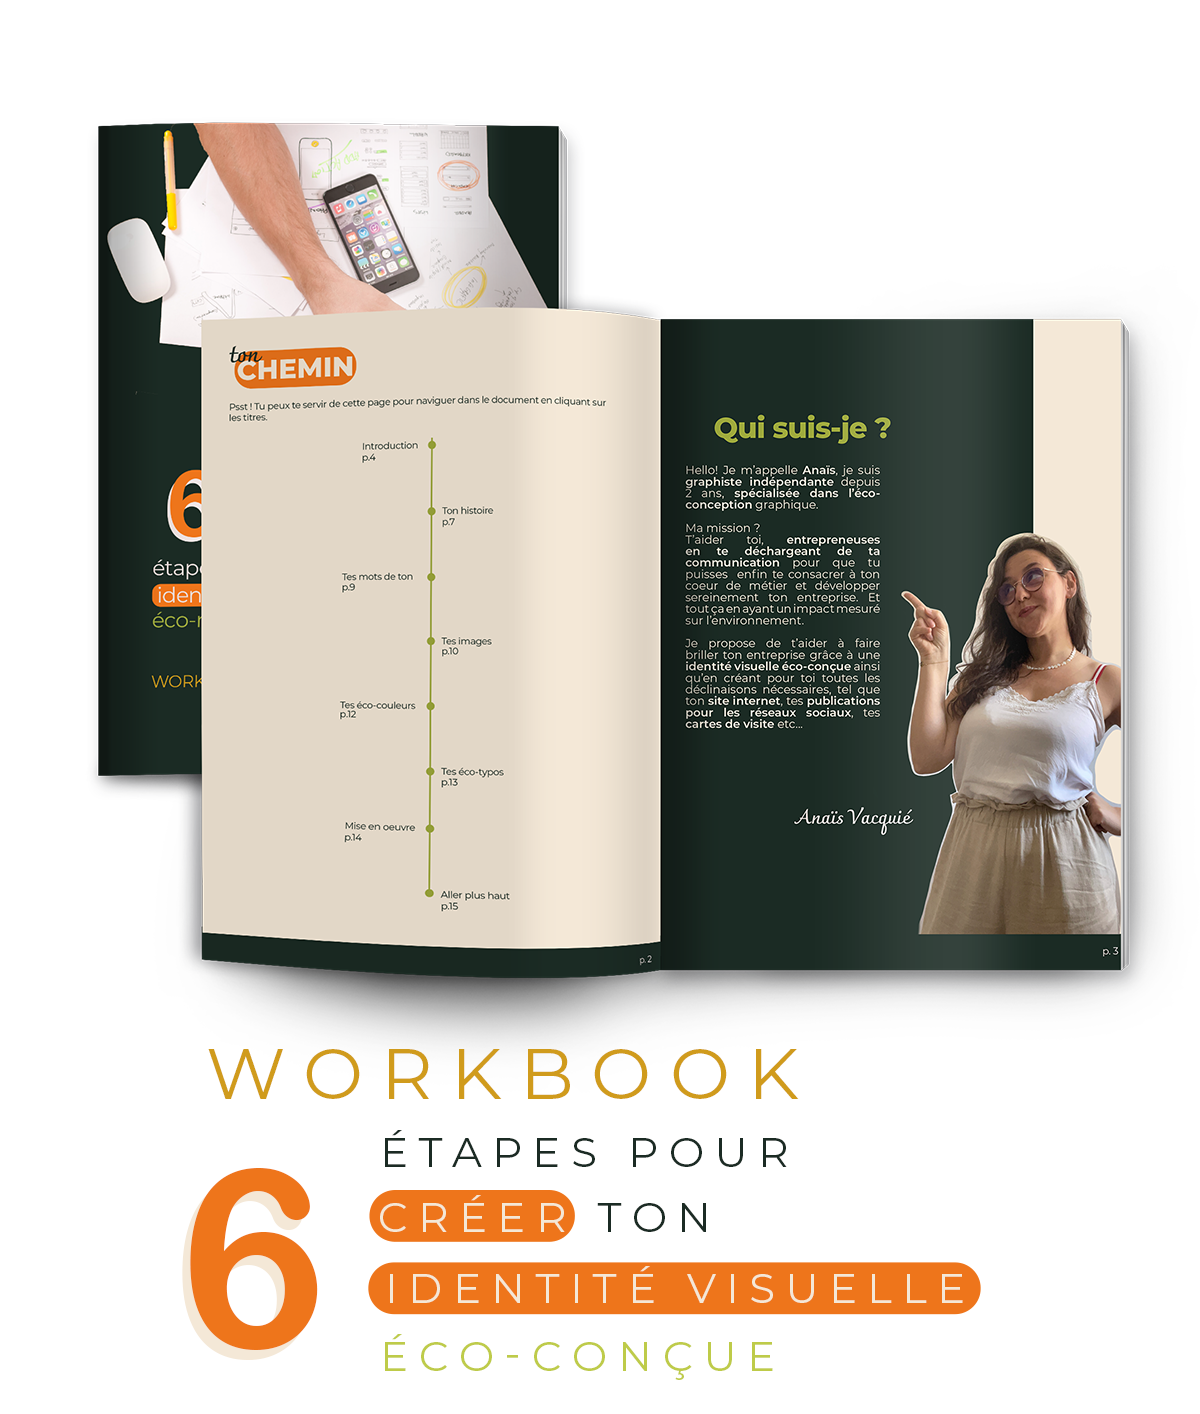 Mise en page du workbook 6 étapes pour créer son identité visuelle.